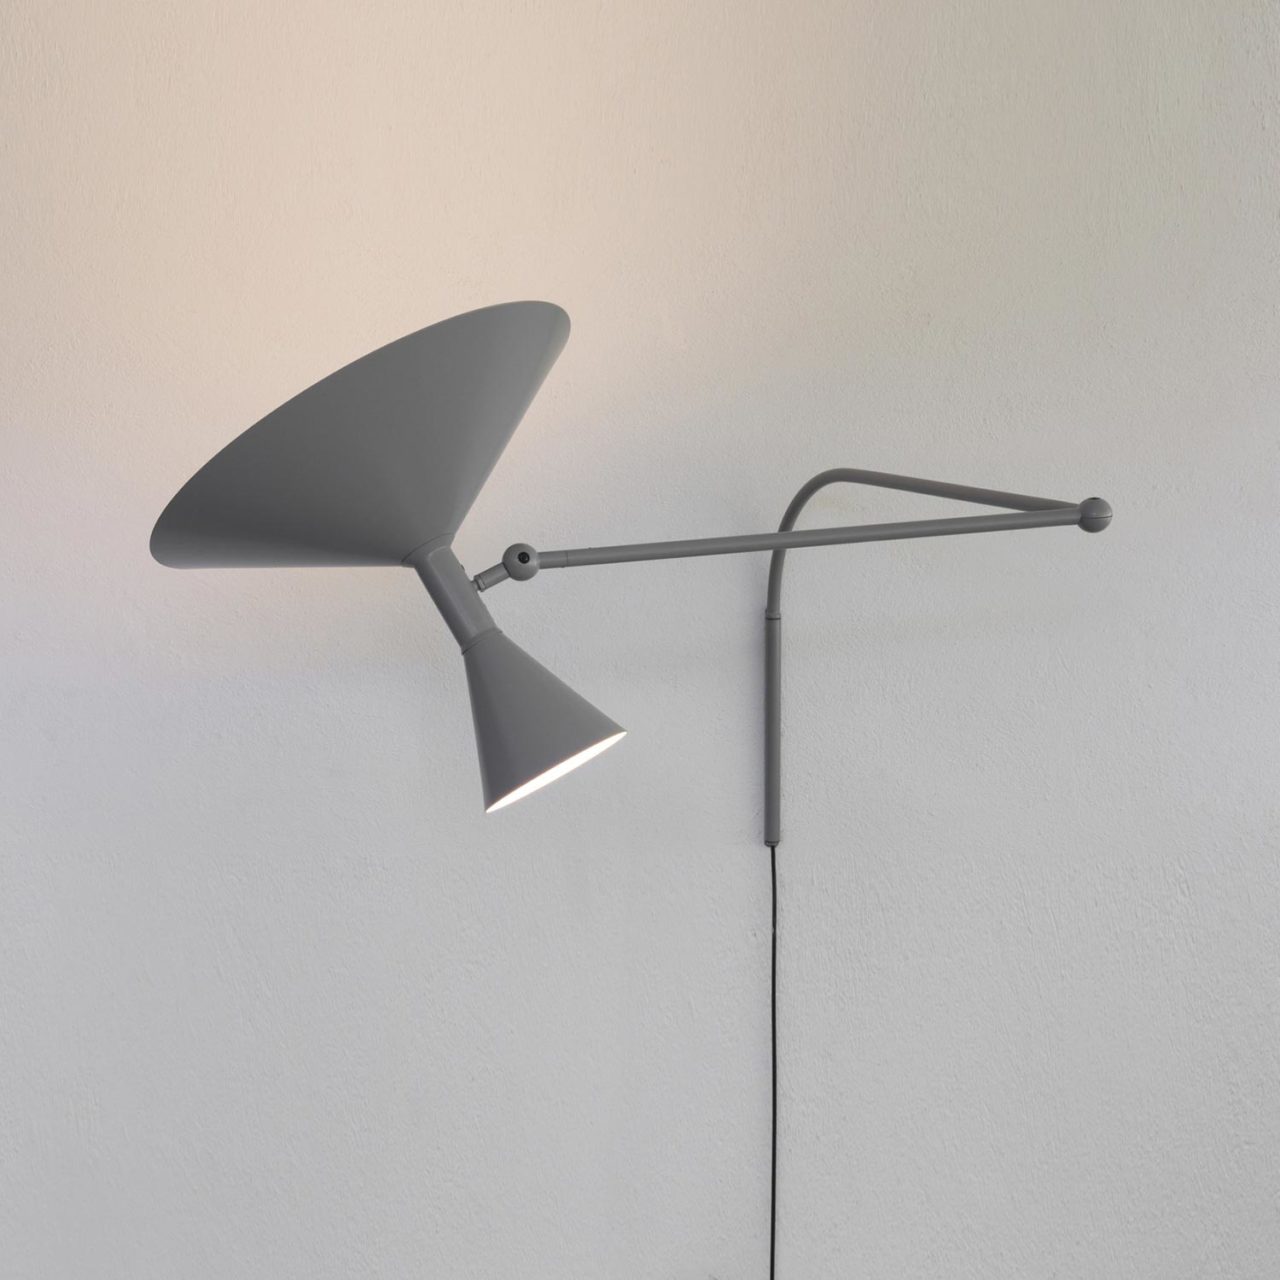 Designer wall light completely adjustable task light for Study table , Workshops, Work Desk